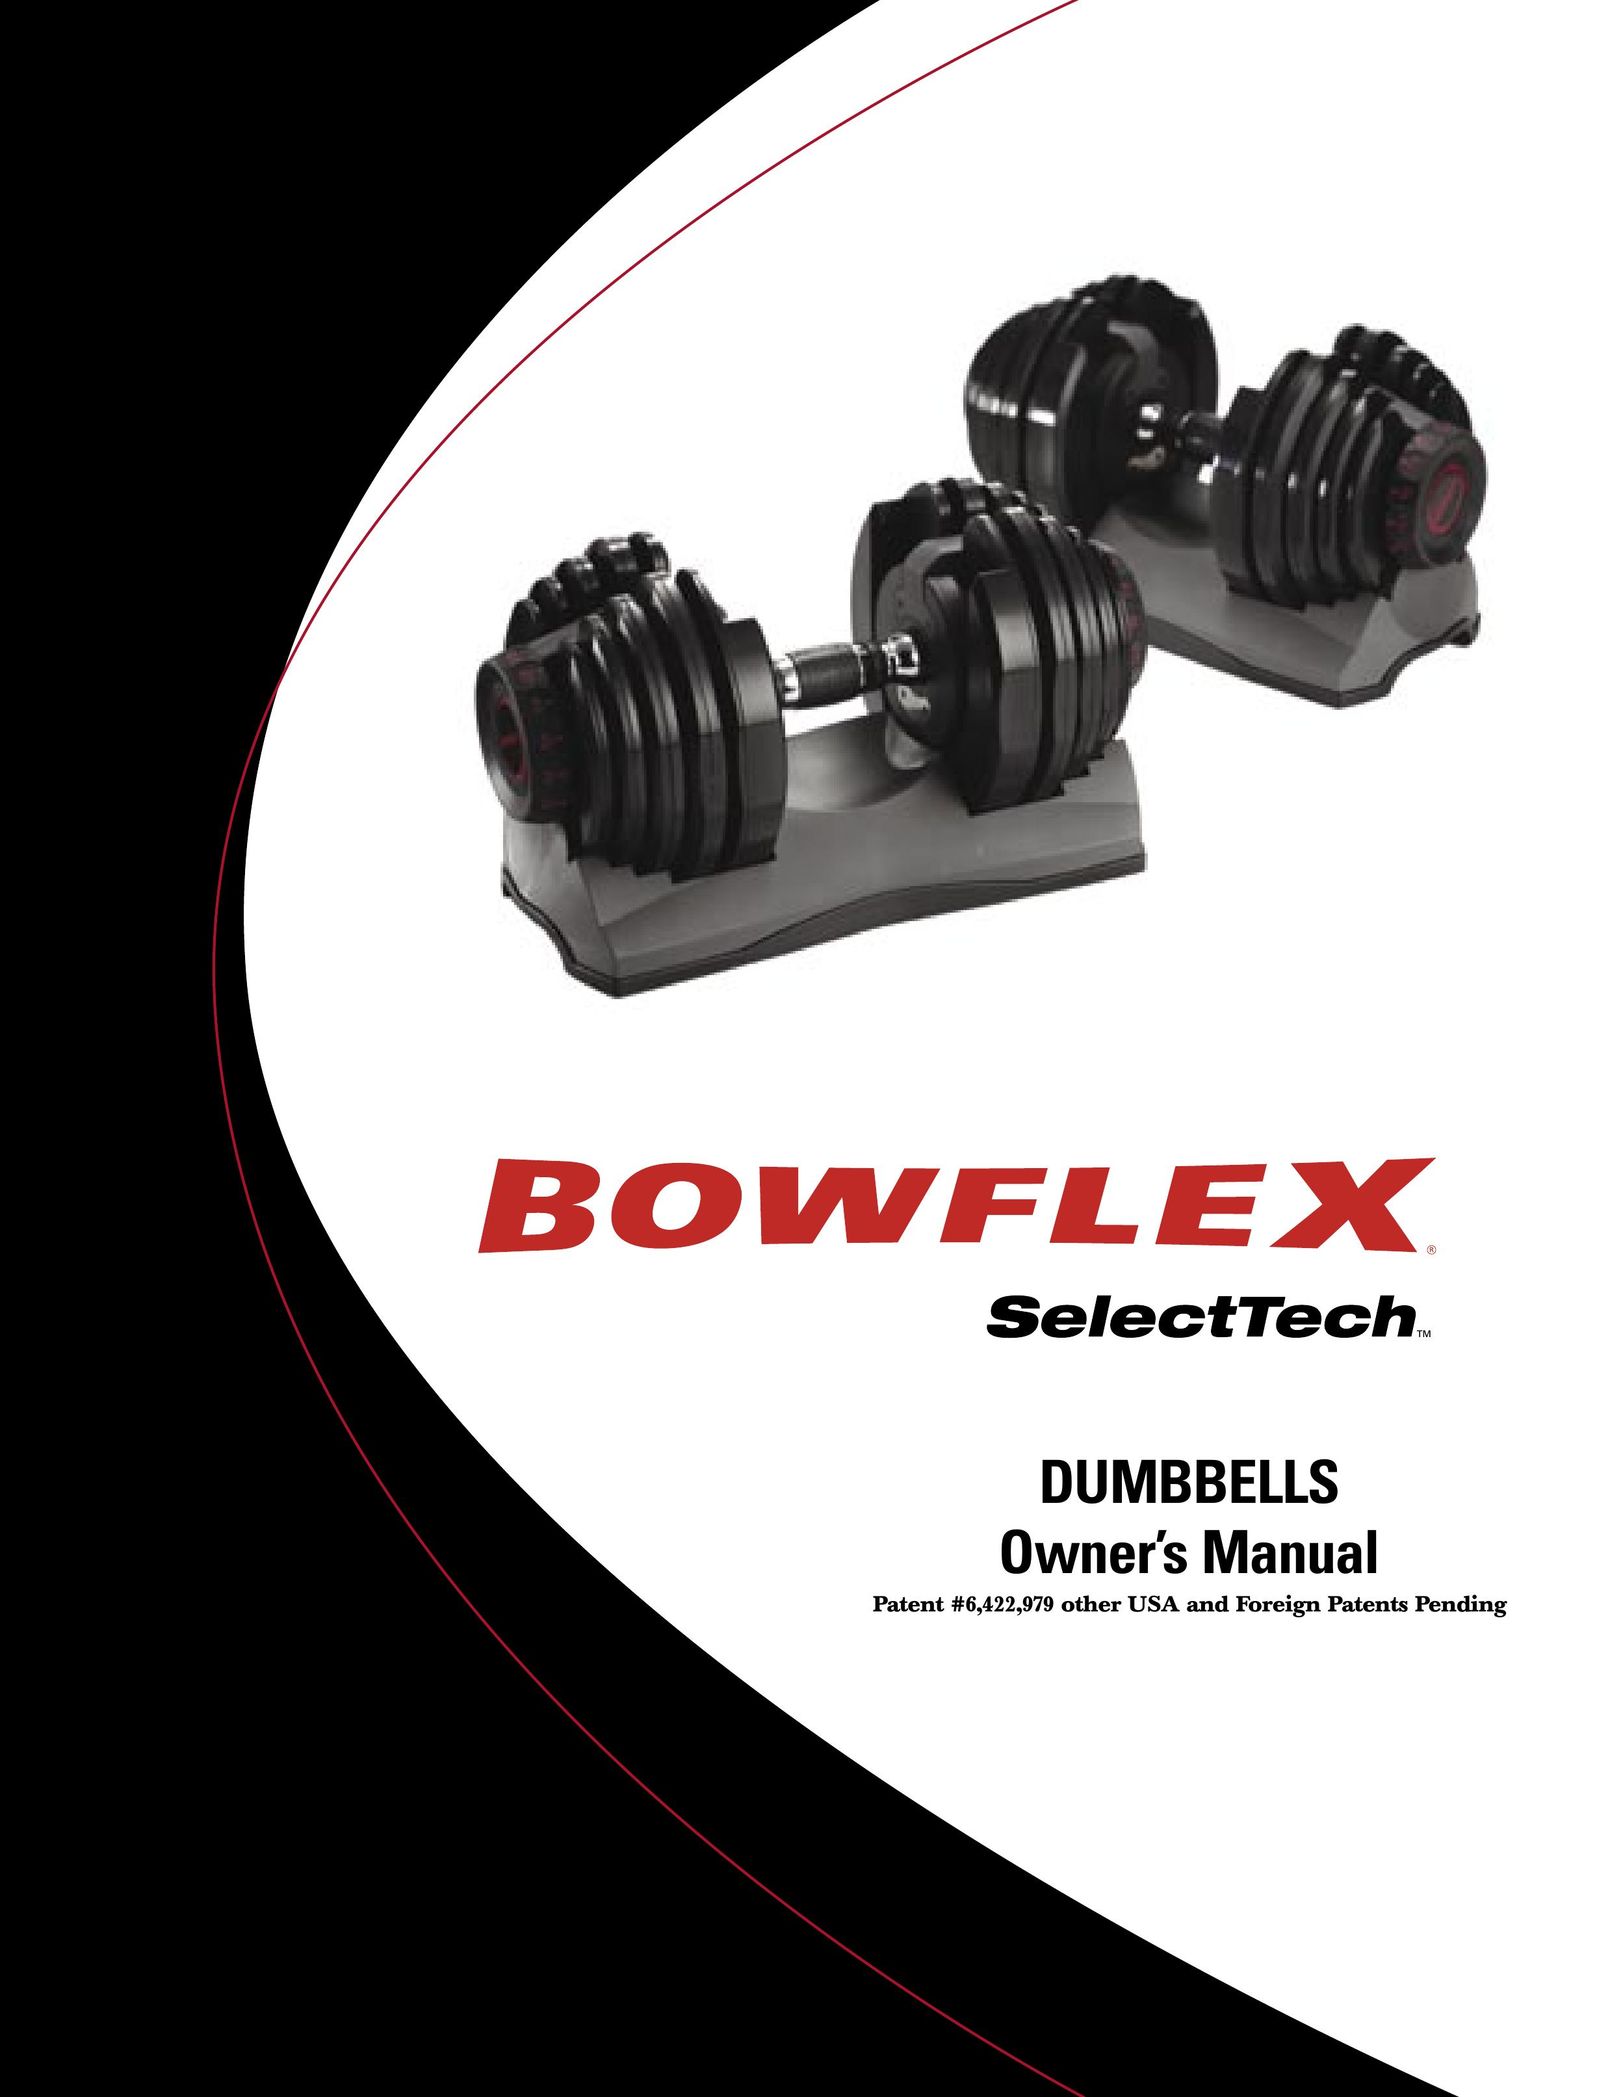 Bowflex Dumbbell Fitness Equipment User Manual